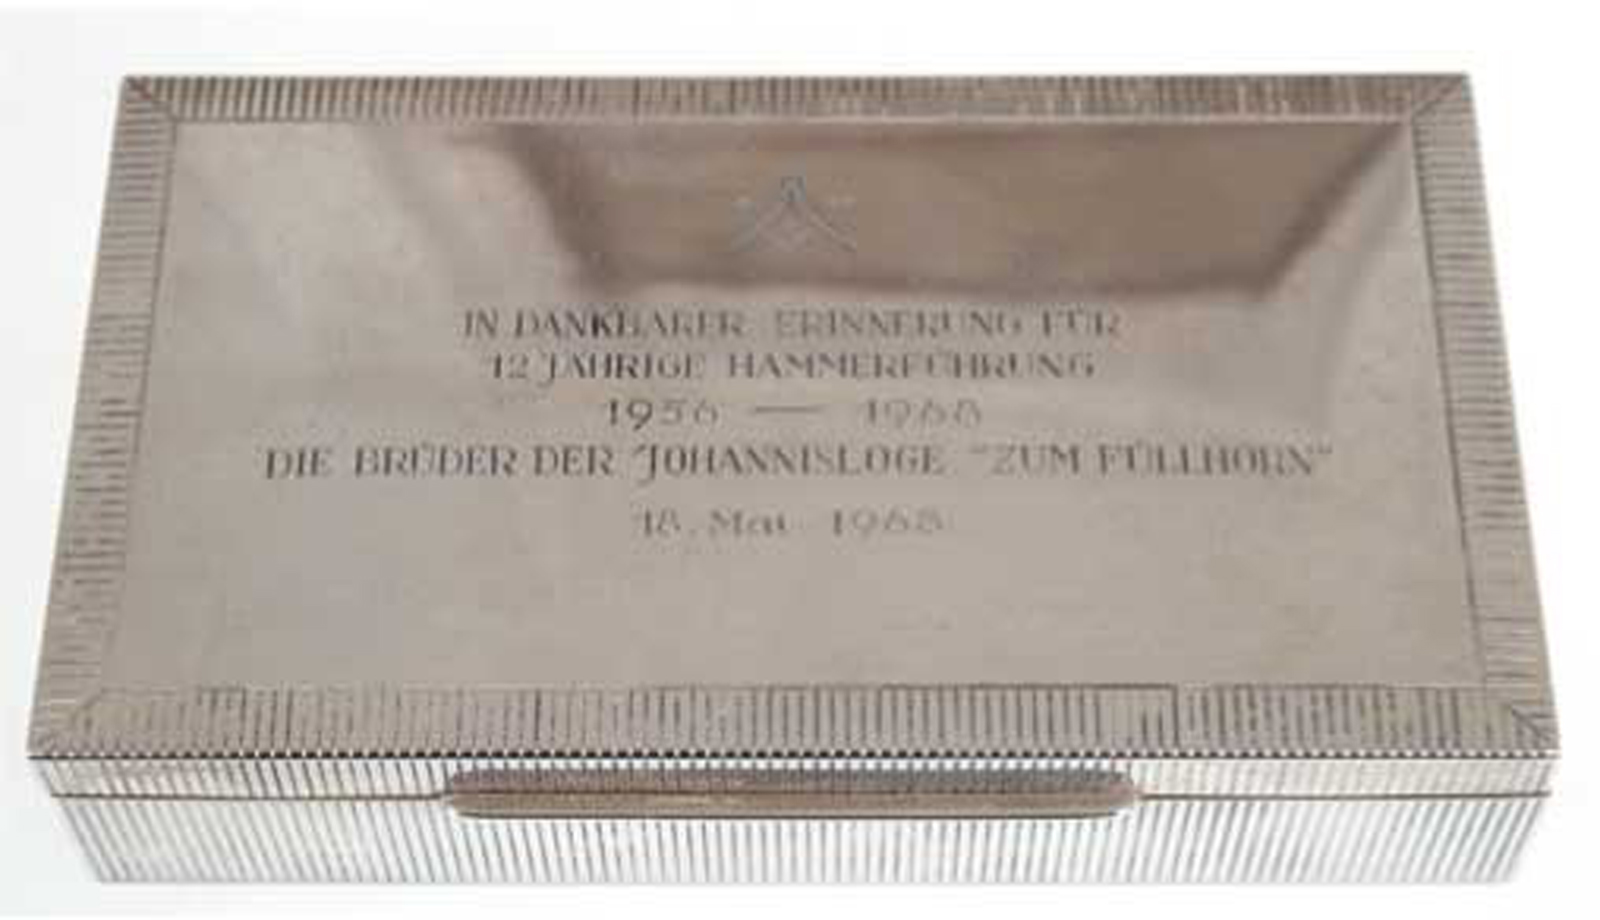 Deckeldose der Johannisloge "Zum Füllhorn" Lübeck, 925er Silber, 450 g, Deckel mit Widmungsgravur v